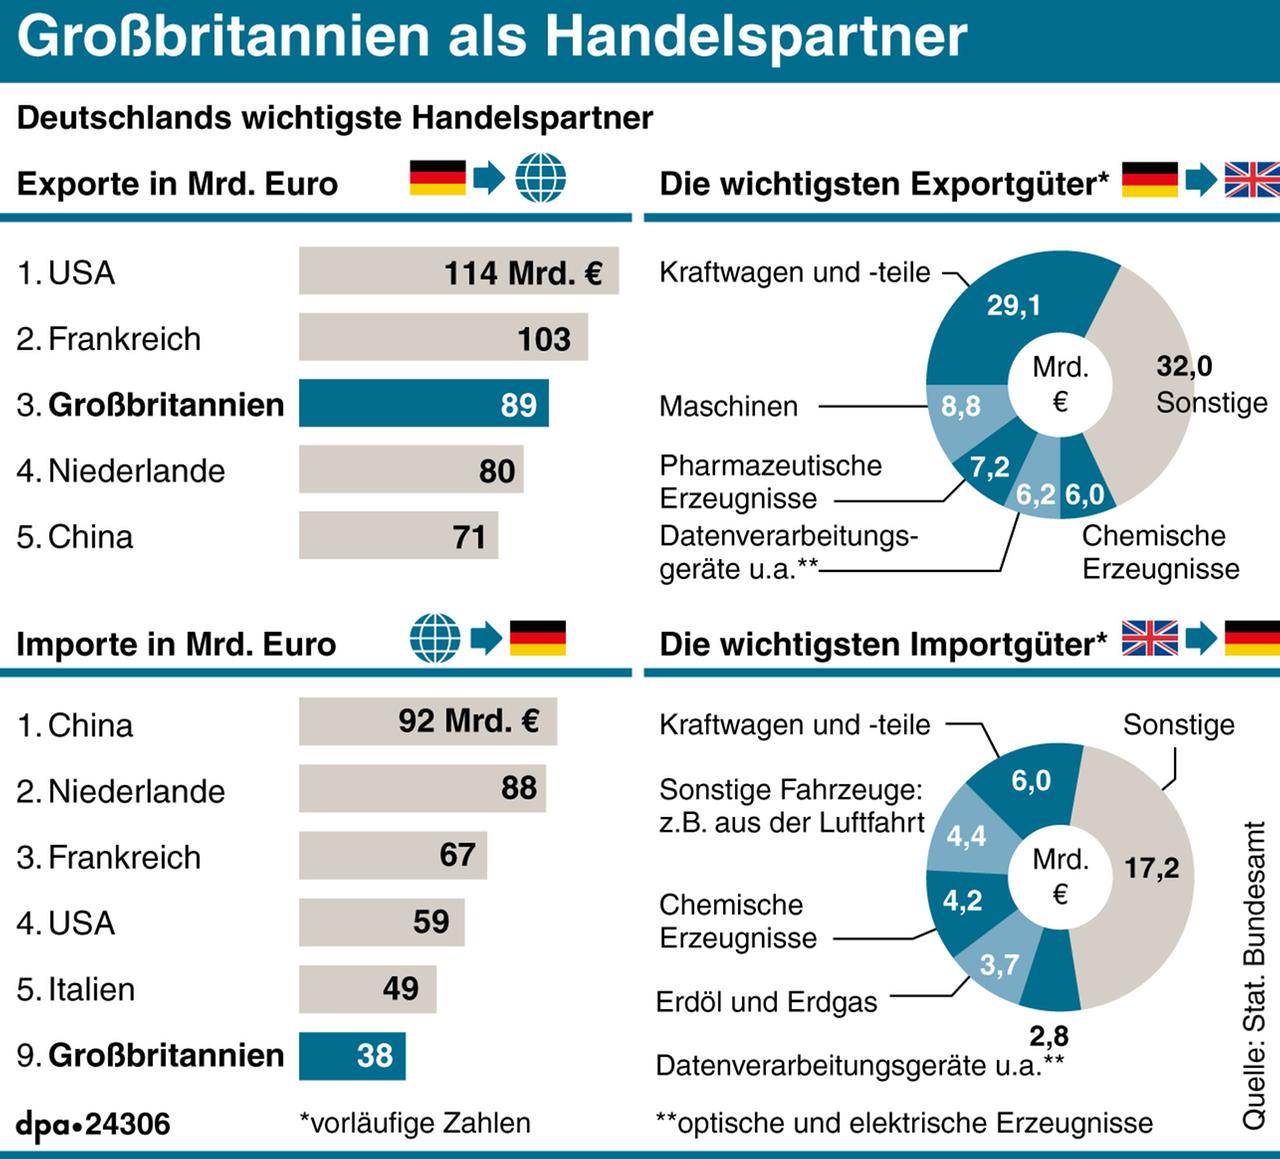 Großbritannien als wichtiger Handelspartner Deutschlands: Diagramme zum Ranking und wichtigen Export- und Importgütern